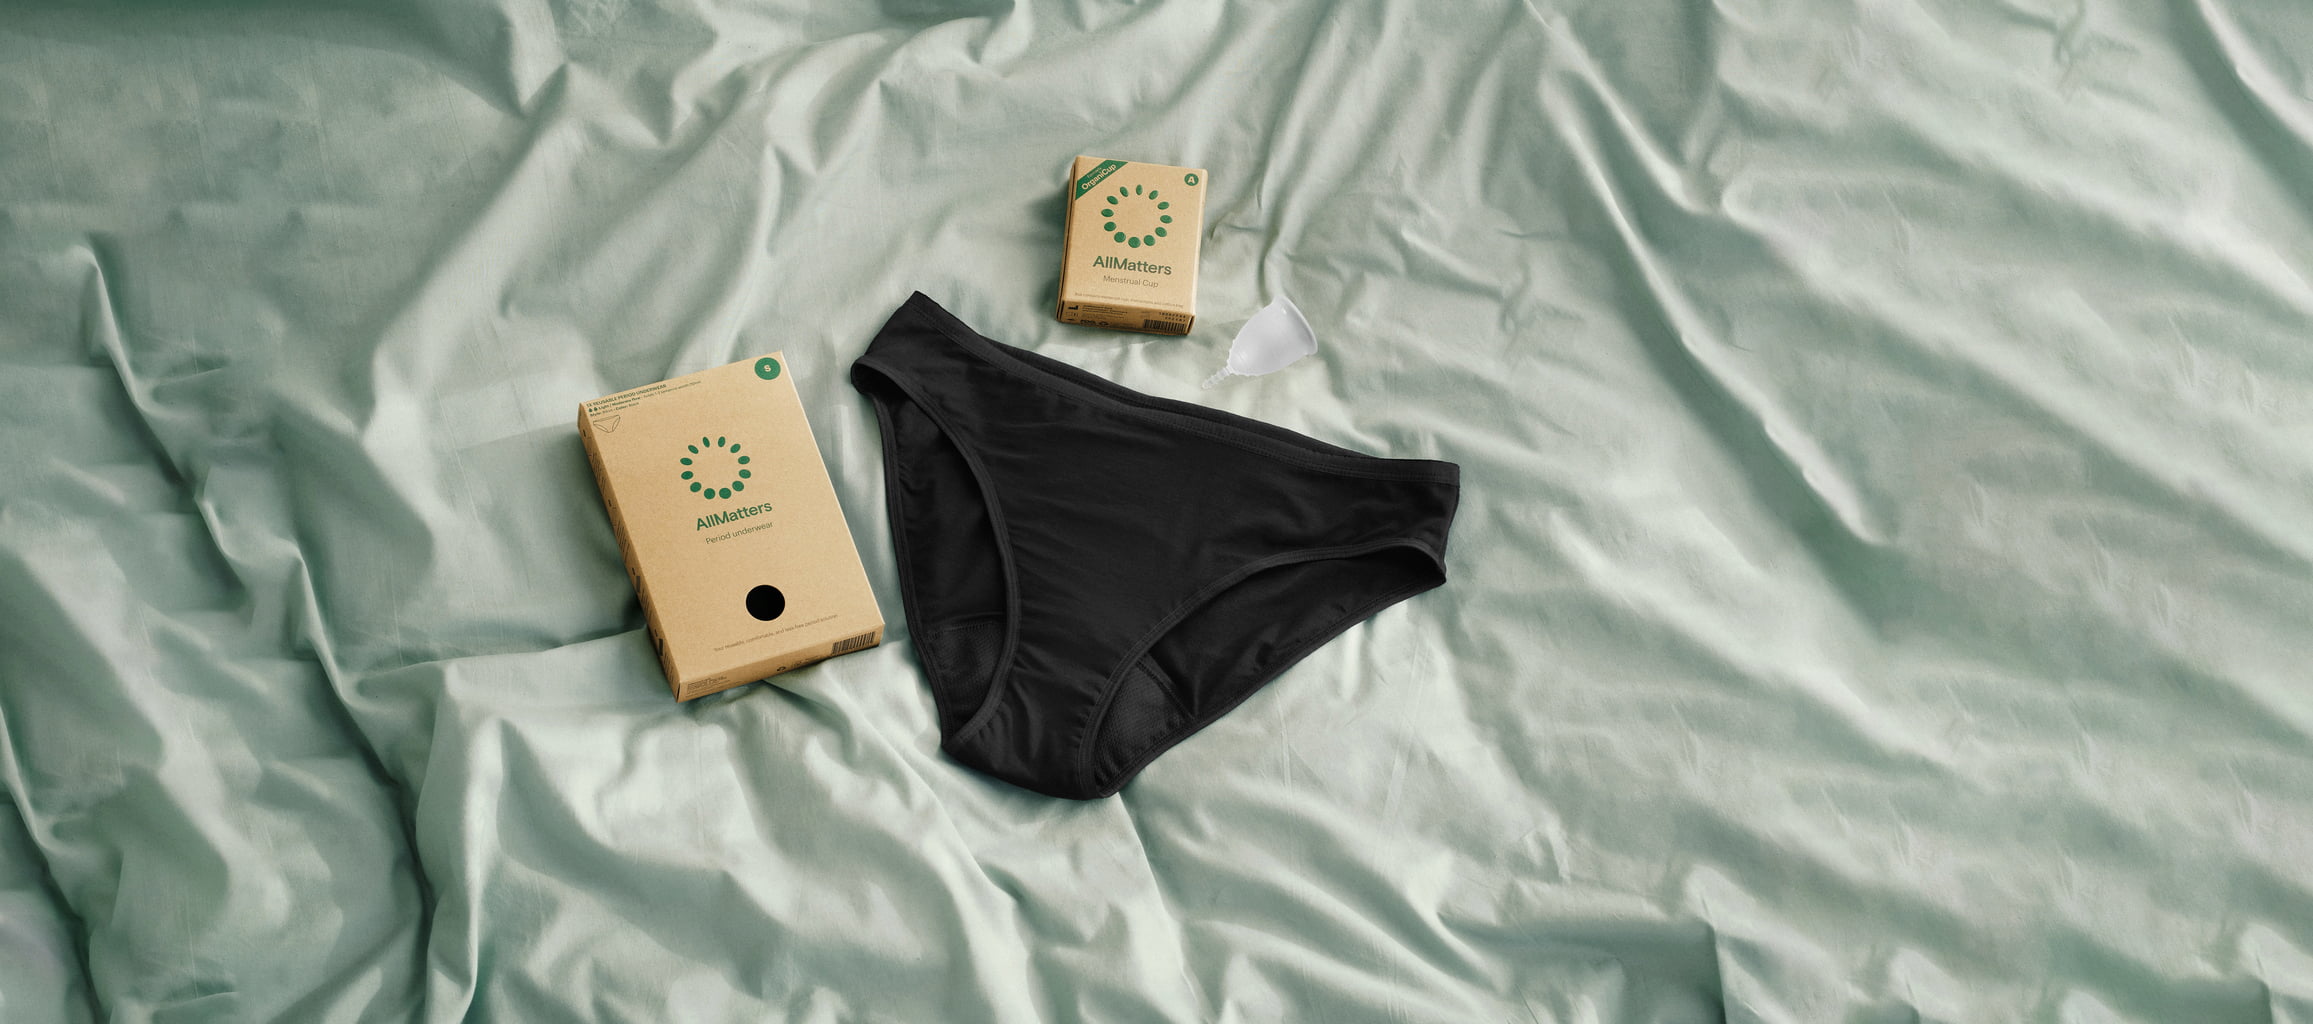 Period Underwear, Menstrual Underwear